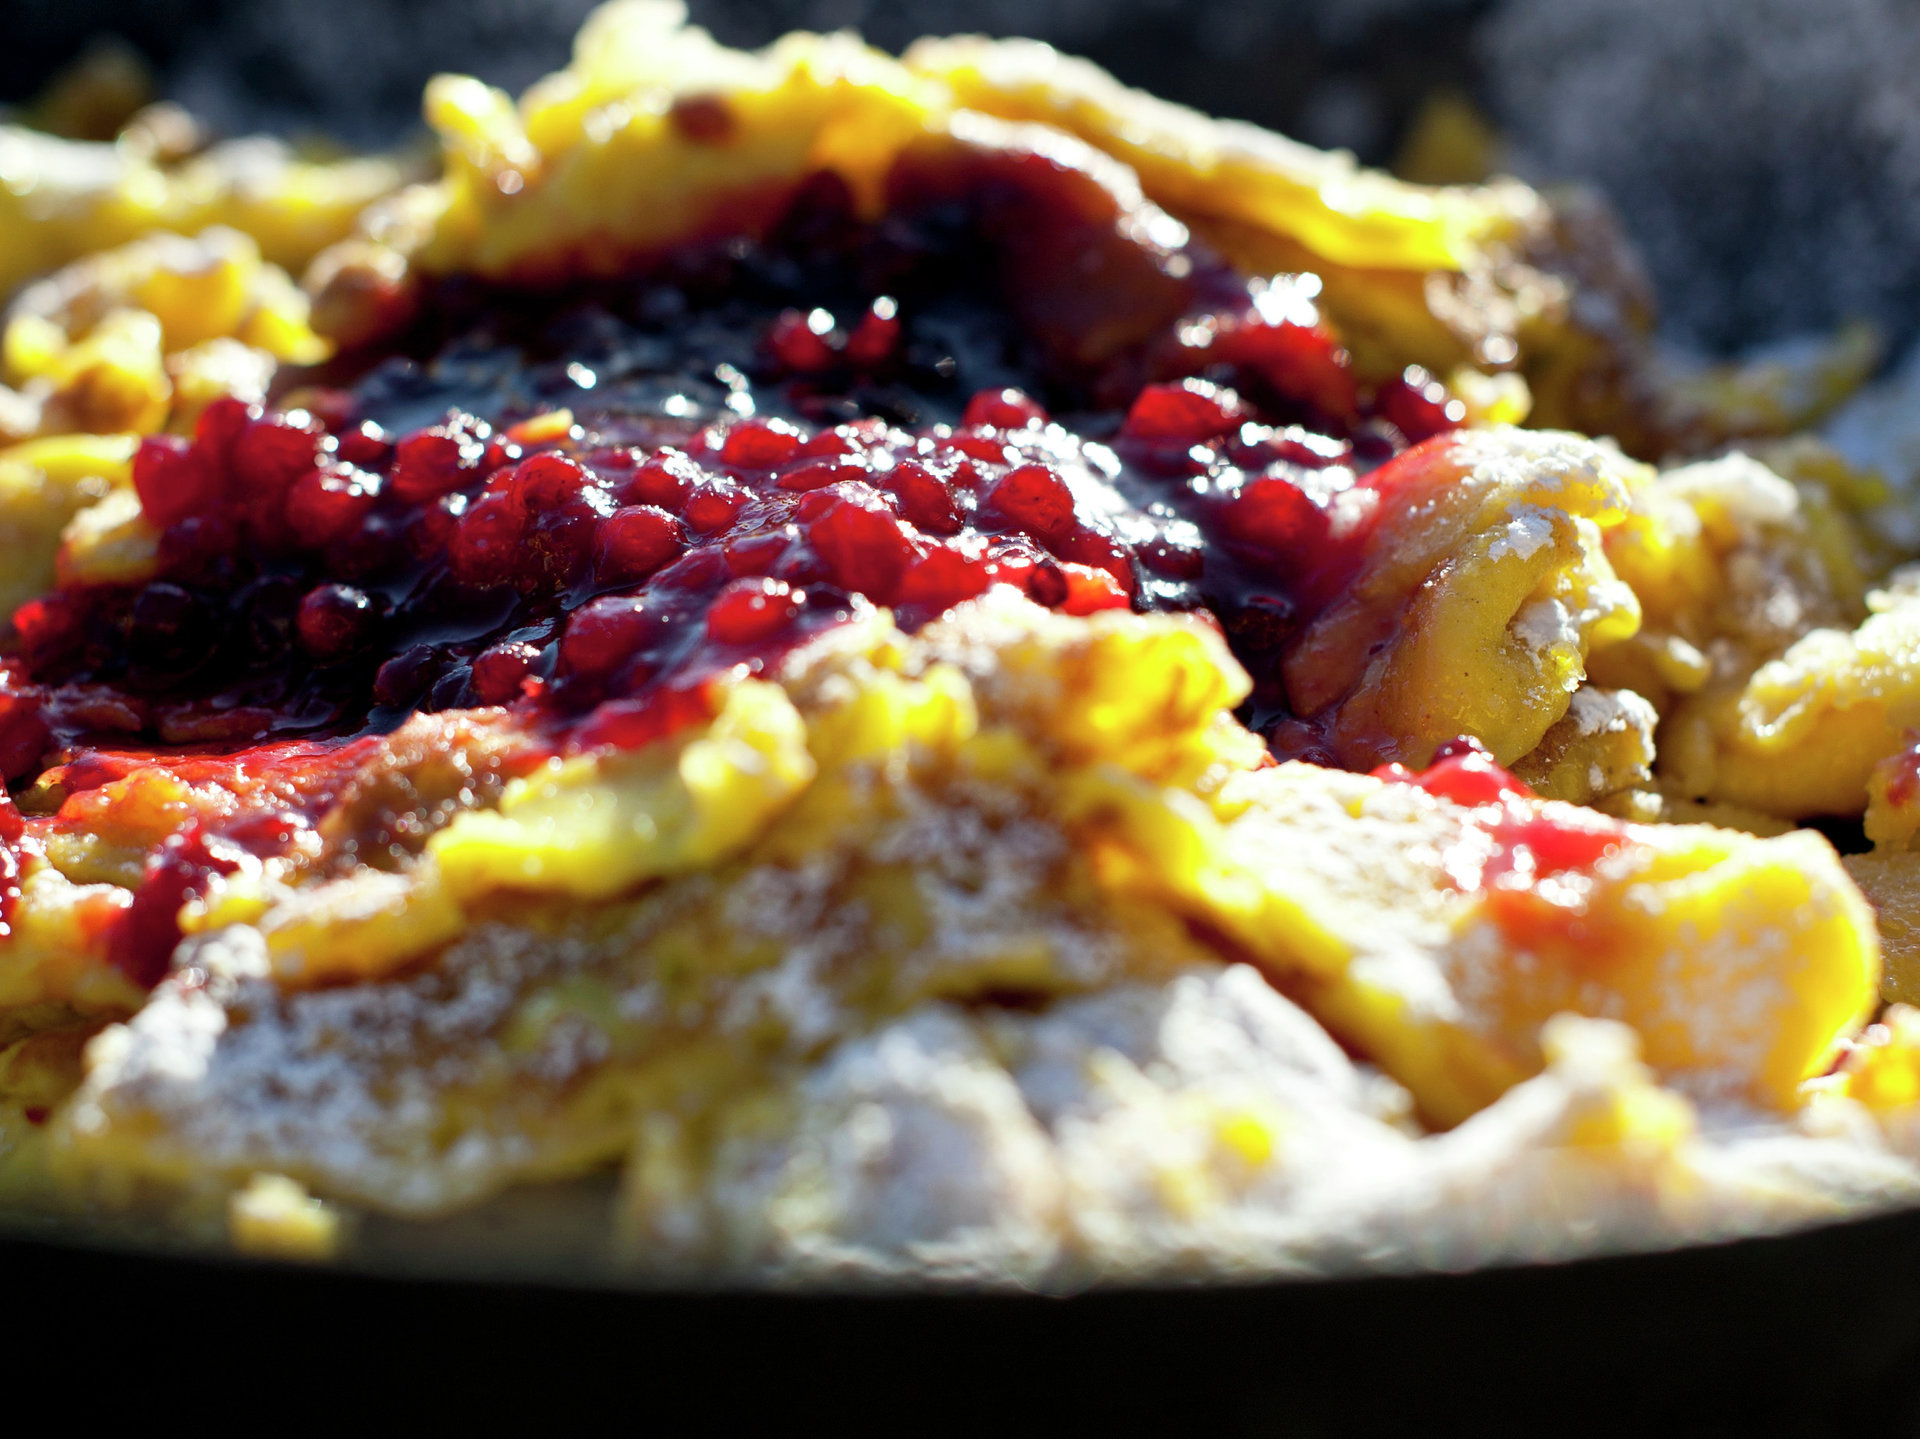 Un originale pancake altoatesino "Kaiserschmarrn" omlett dolce strappazzato servito in padella.